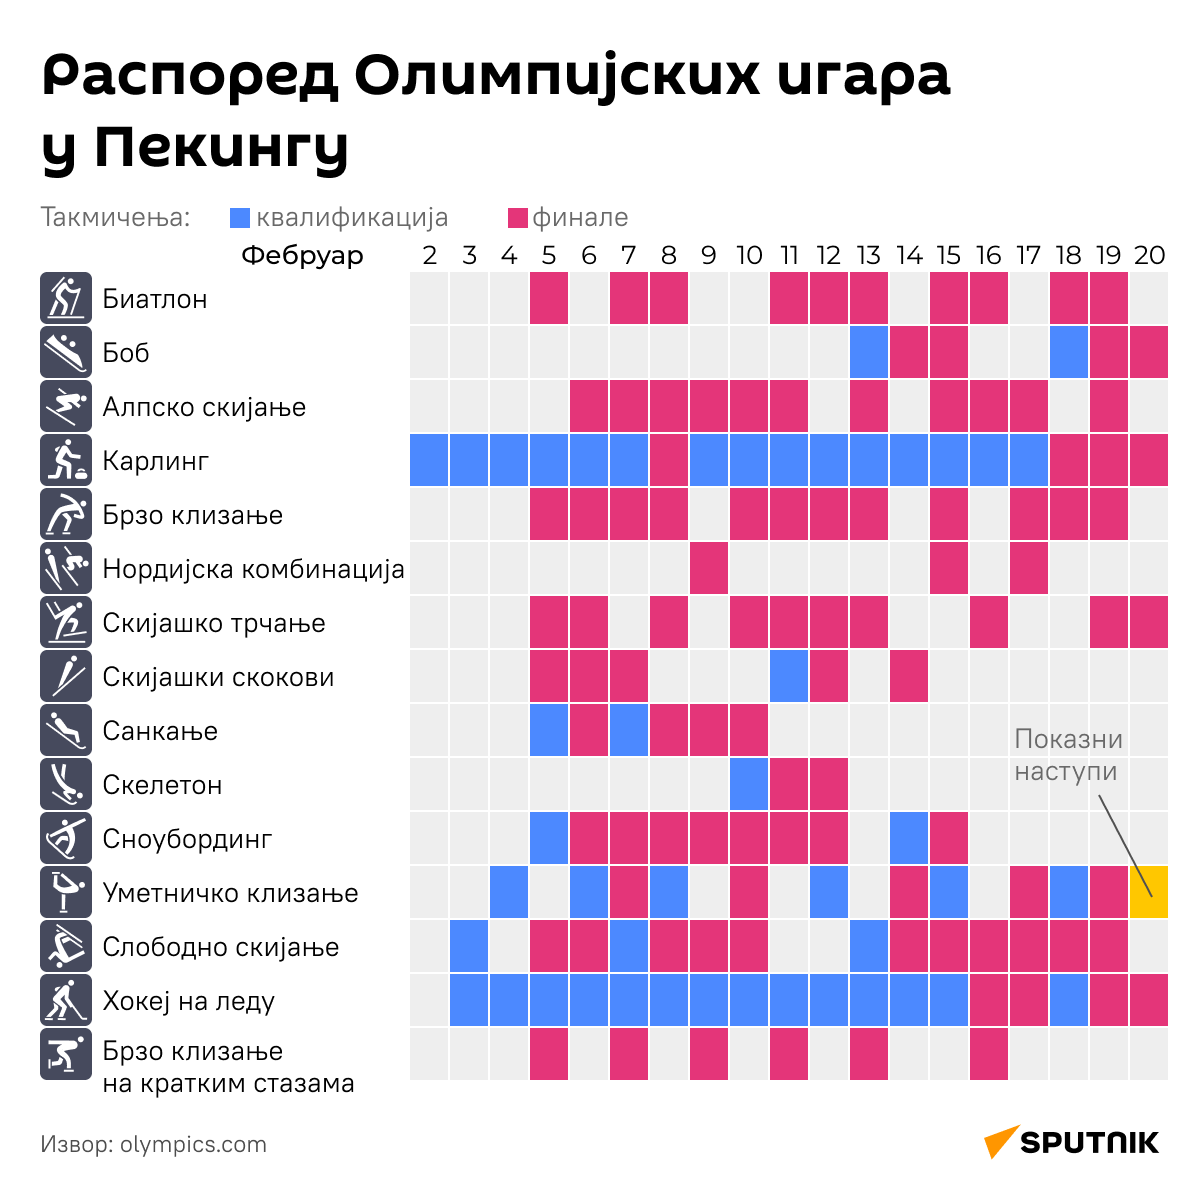 мнфографика ОИ у Пекингу десктоп - Sputnik Србија